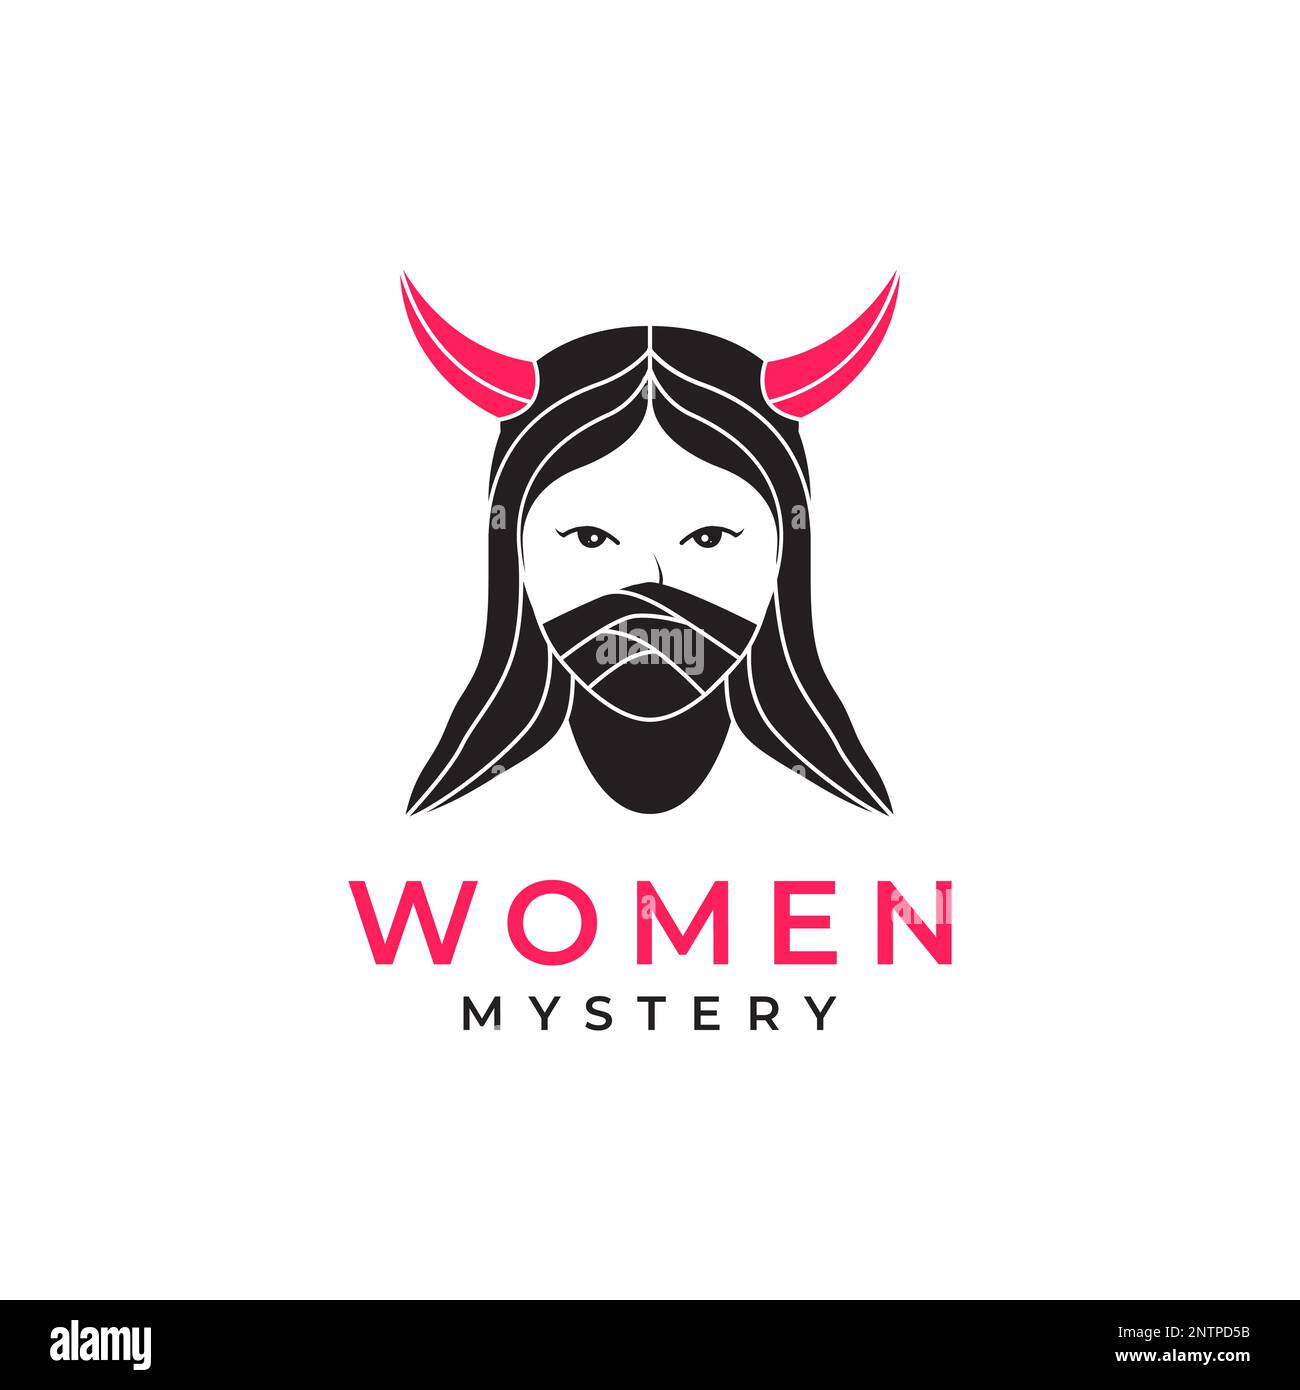 horned women mystery long hair mask beauty logo design icon vector illustration Stock Vector